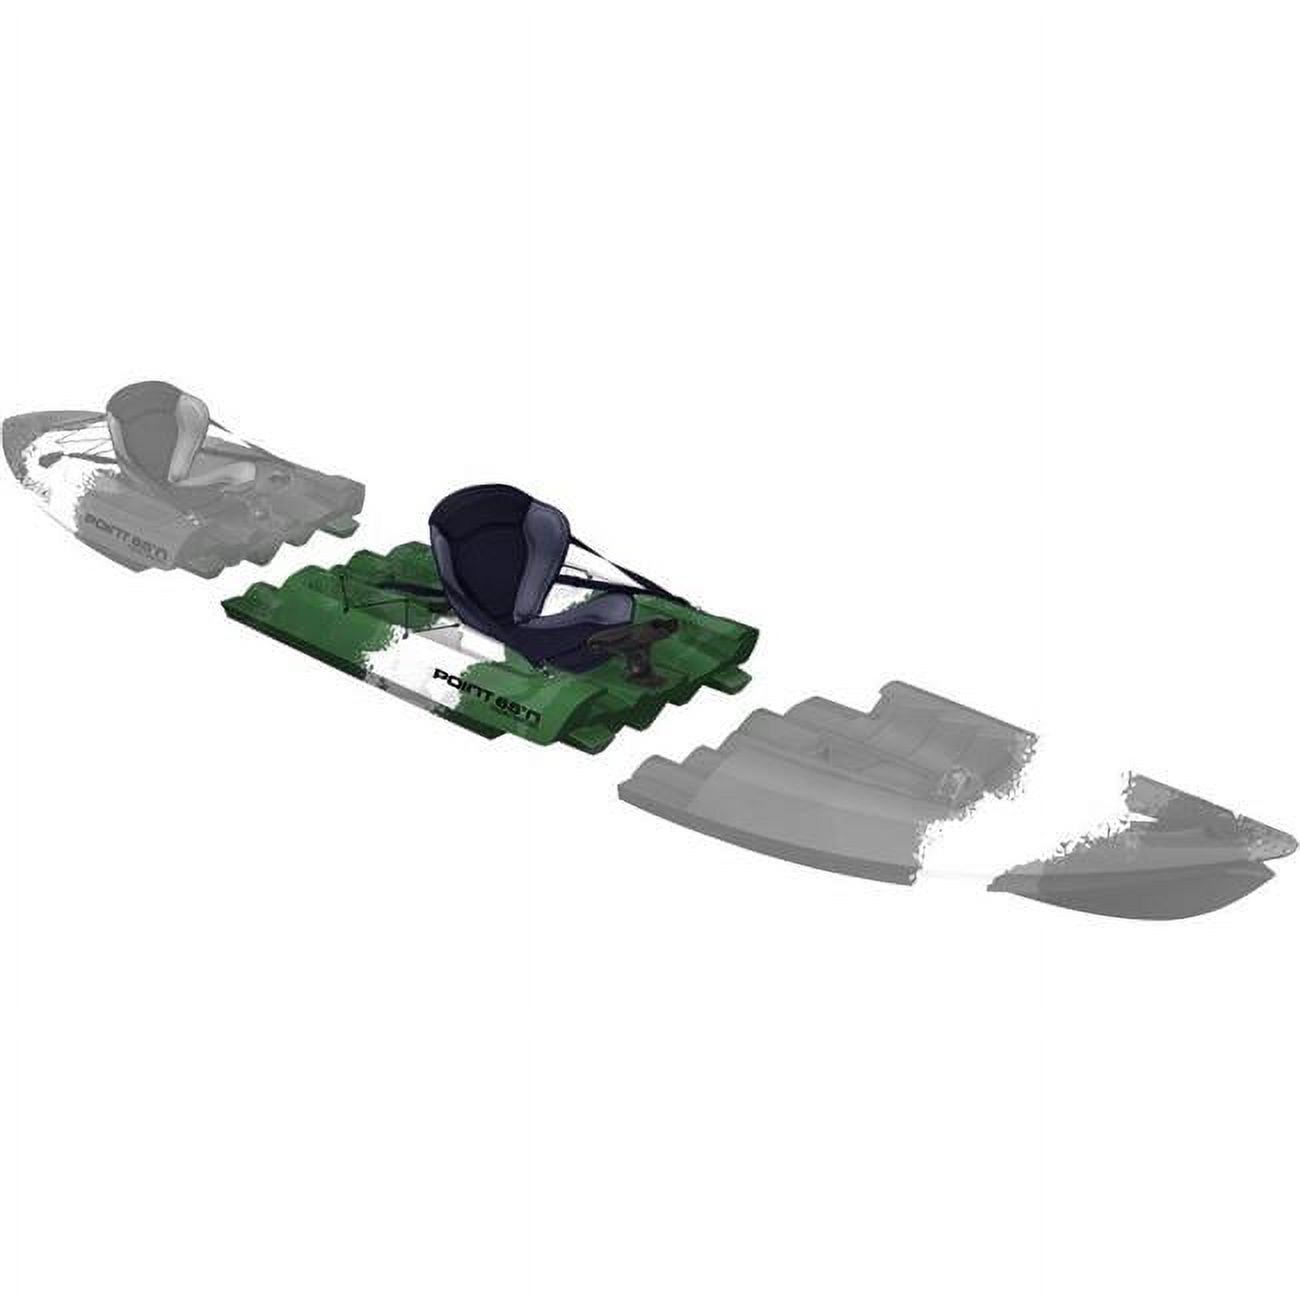 Tequila GTX Angler Modular Kayak Mid Section - Green Camo - image 1 of 1